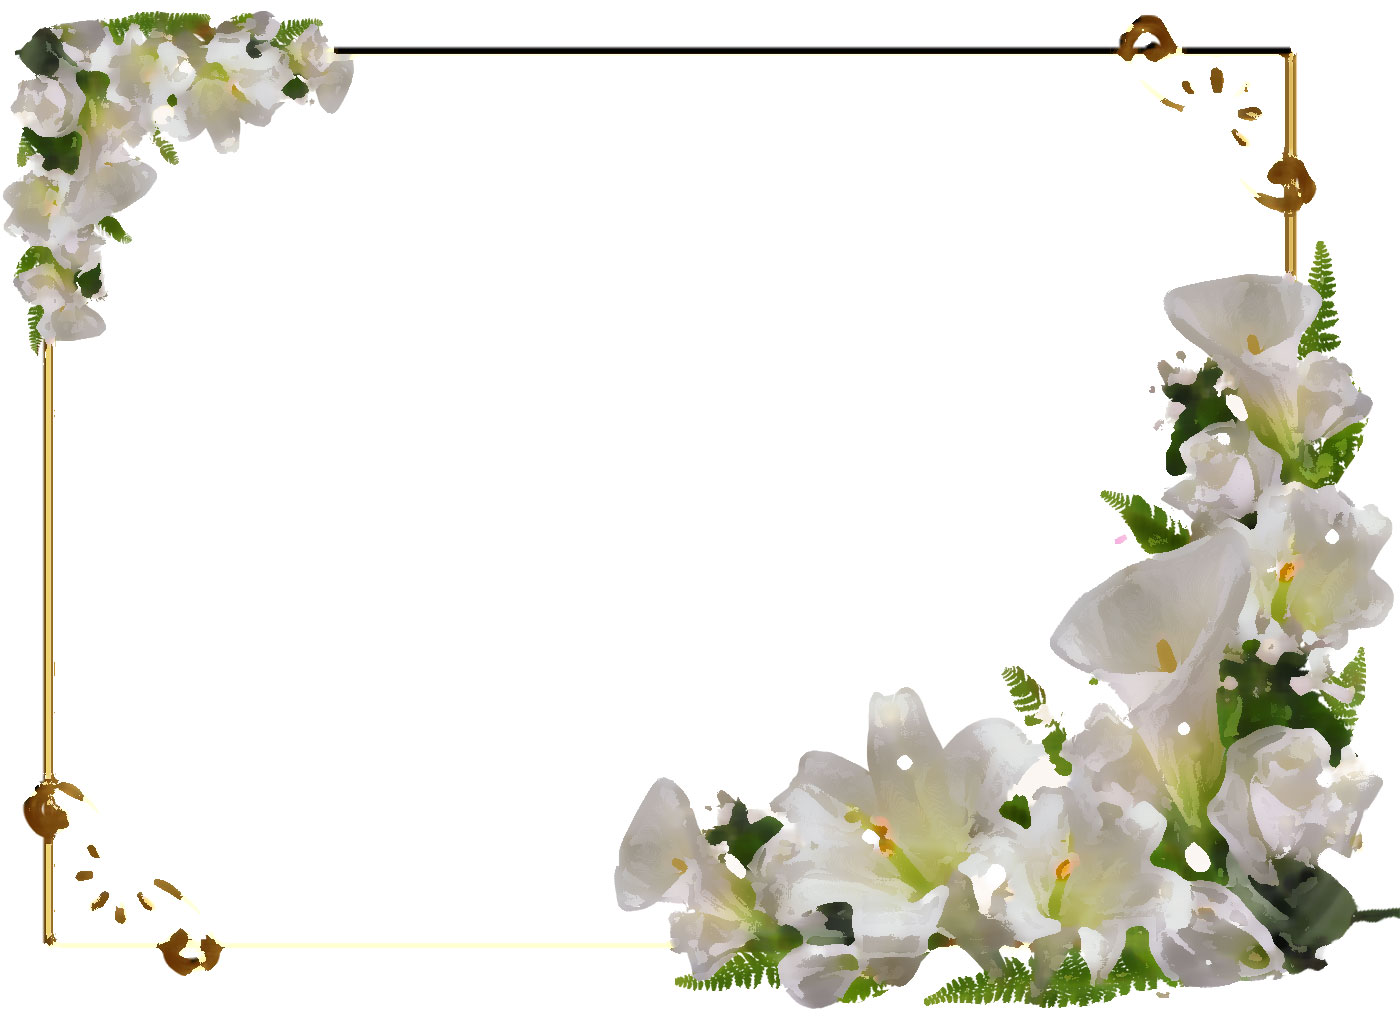 リアルな花のイラスト フリー素材 フレーム枠no 1245 白ユリ コーナー